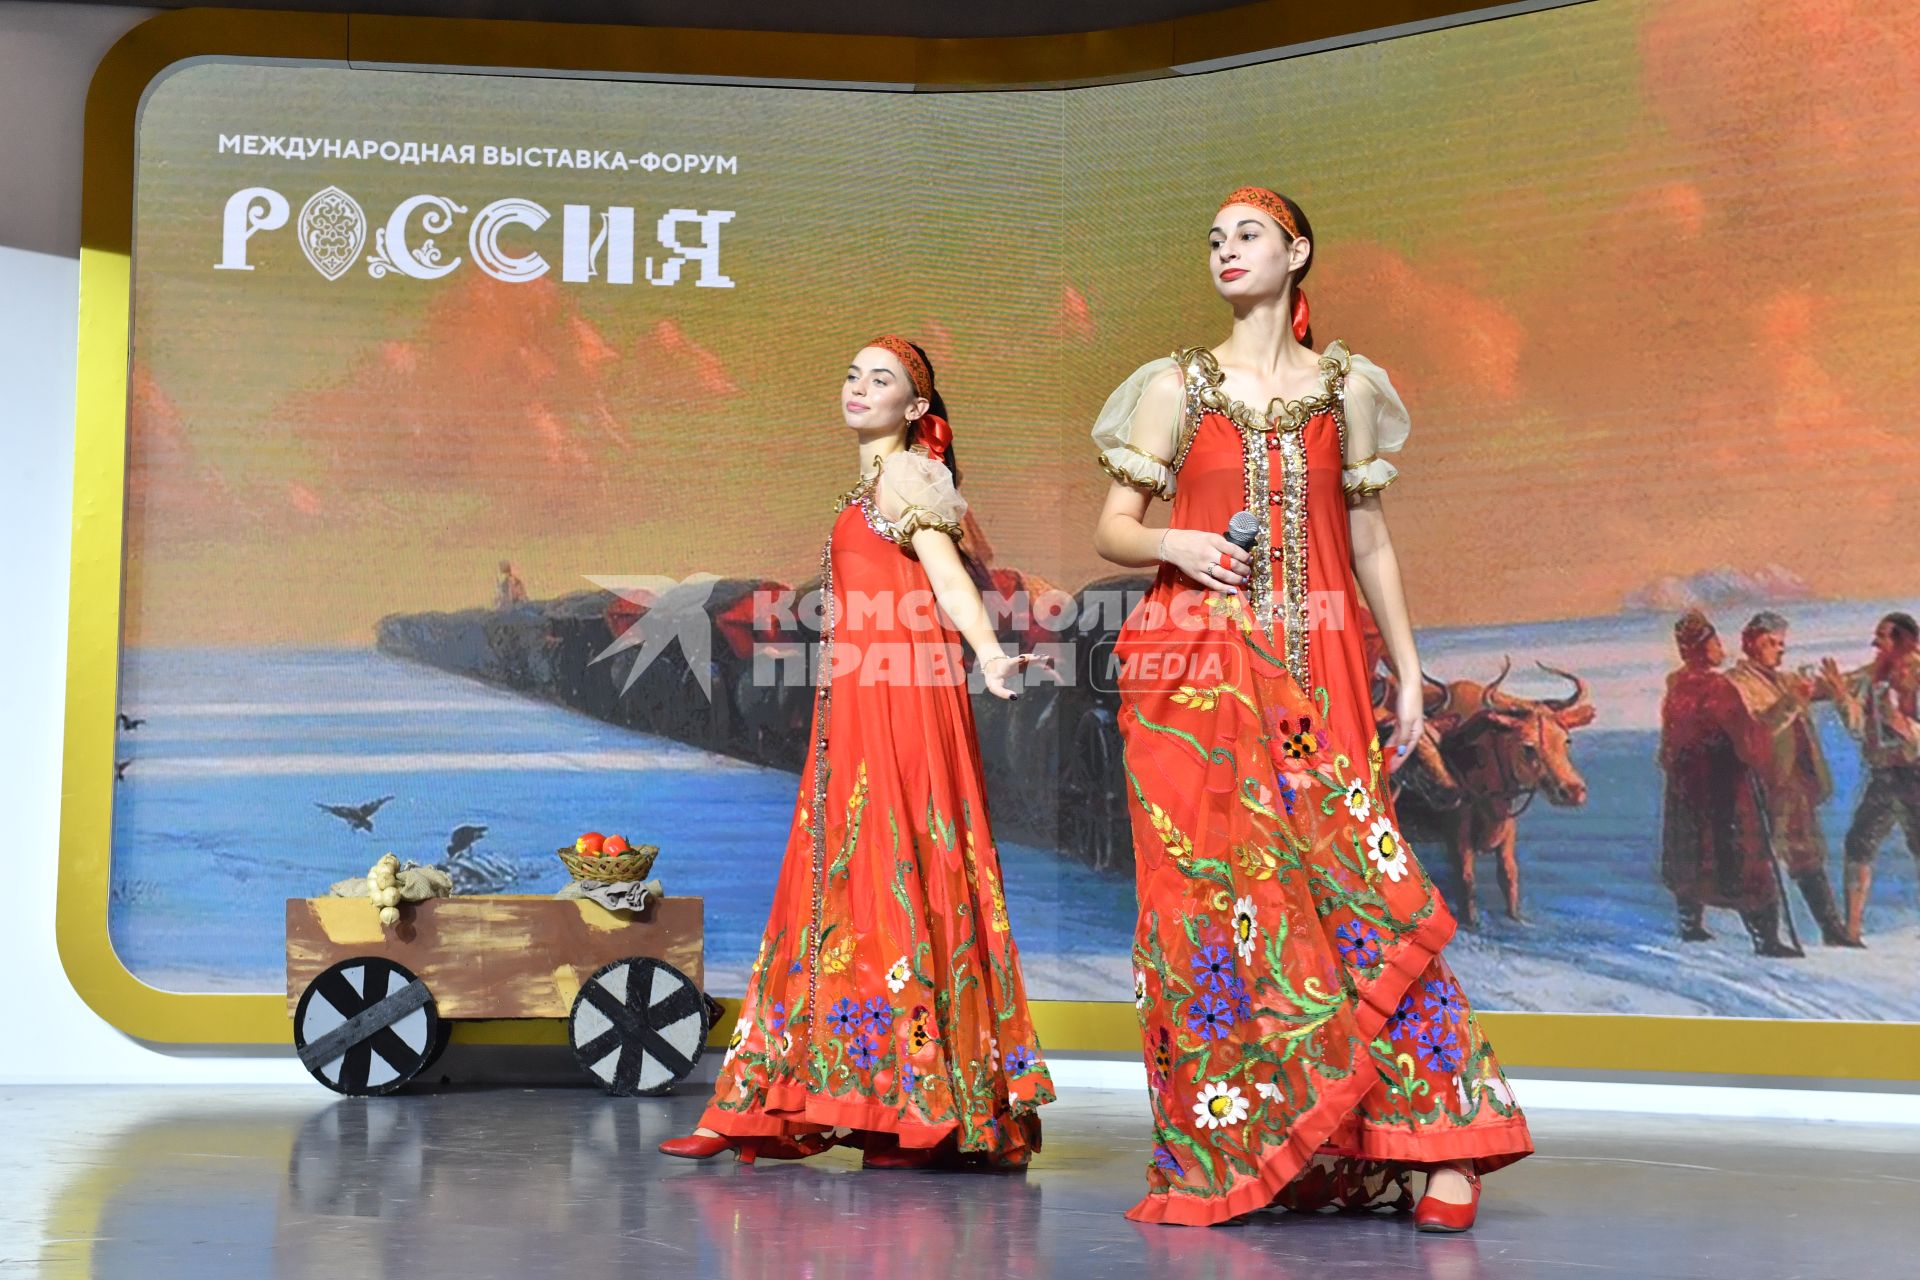 День Херсонской области на выставке-форуме `Россия` на ВДНХ